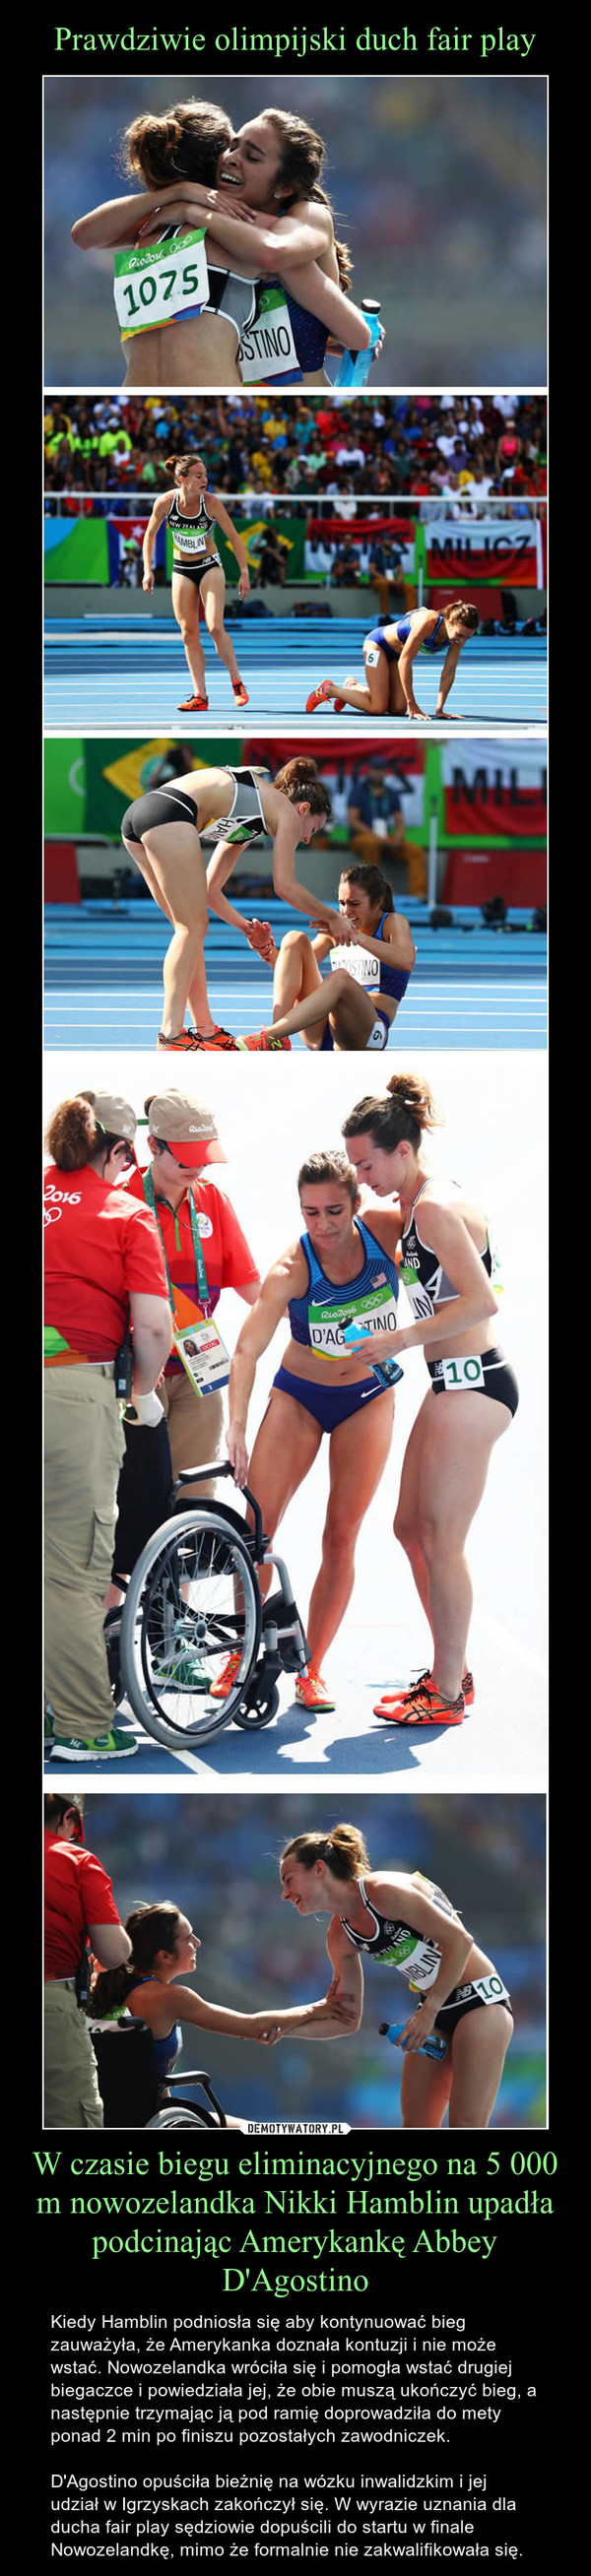 W czasie biegu eliminacyjnego na 5 000 m nowozelandka Nikki Hamblin upadła podcinając Amerykankę Abbey D'Agostino – Kiedy Hamblin podniosła się aby kontynuować bieg zauważyła, że Amerykanka doznała kontuzji i nie może wstać. Nowozelandka wróciła się i pomogła wstać drugiej biegaczce i powiedziała jej, że obie muszą ukończyć bieg, a następnie trzymając ją pod ramię doprowadziła do mety ponad 2 min po finiszu pozostałych zawodniczek.D'Agostino opuściła bieżnię na wózku inwalidzkim i jej udział w Igrzyskach zakończył się. W wyrazie uznania dla ducha fair play sędziowie dopuścili do startu w finale Nowozelandkę, mimo że formalnie nie zakwalifikowała się. 